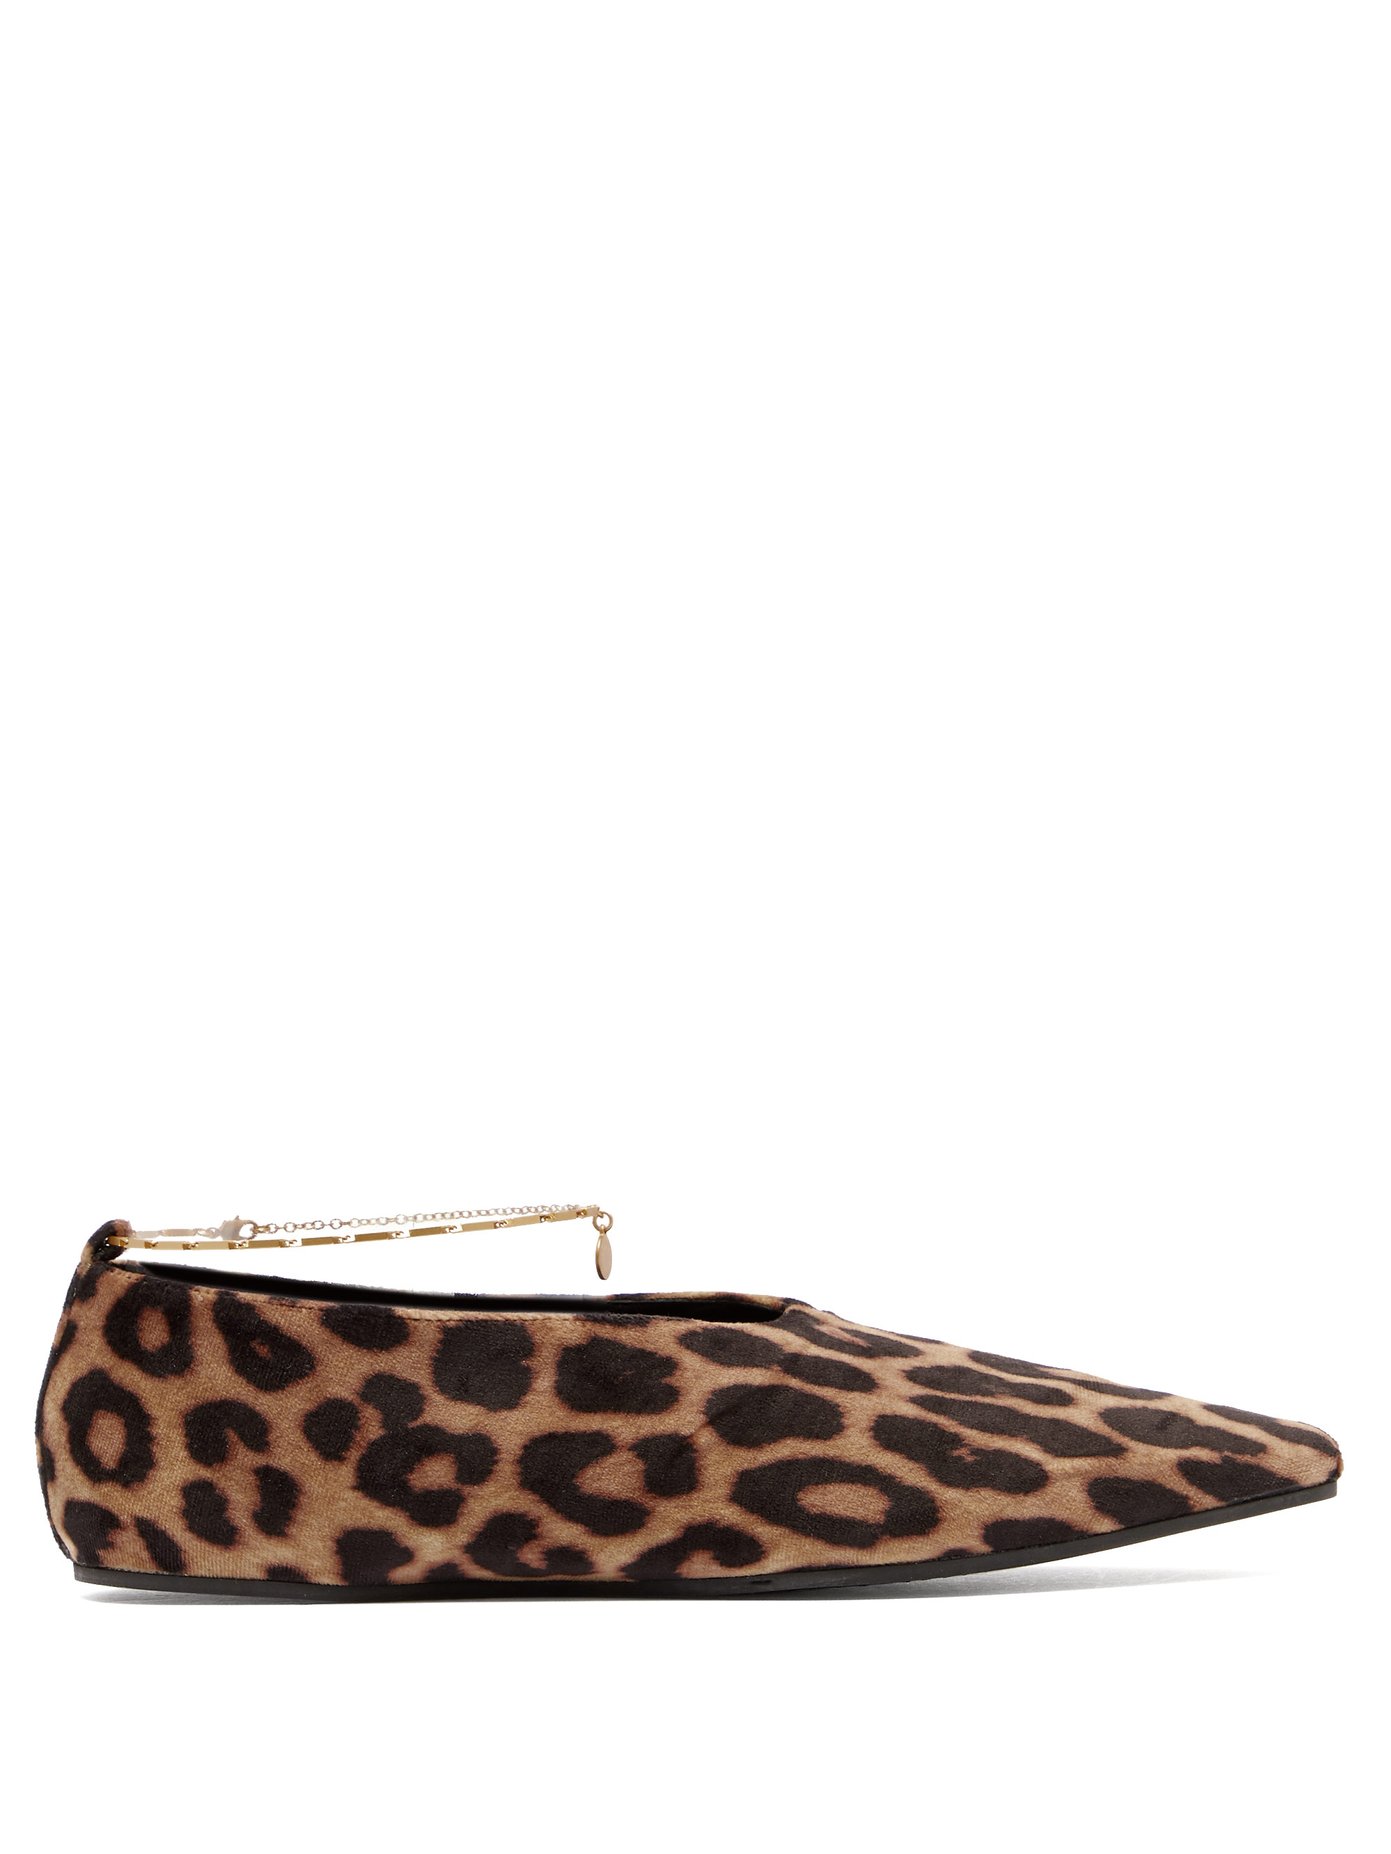 leopard ballet shoes